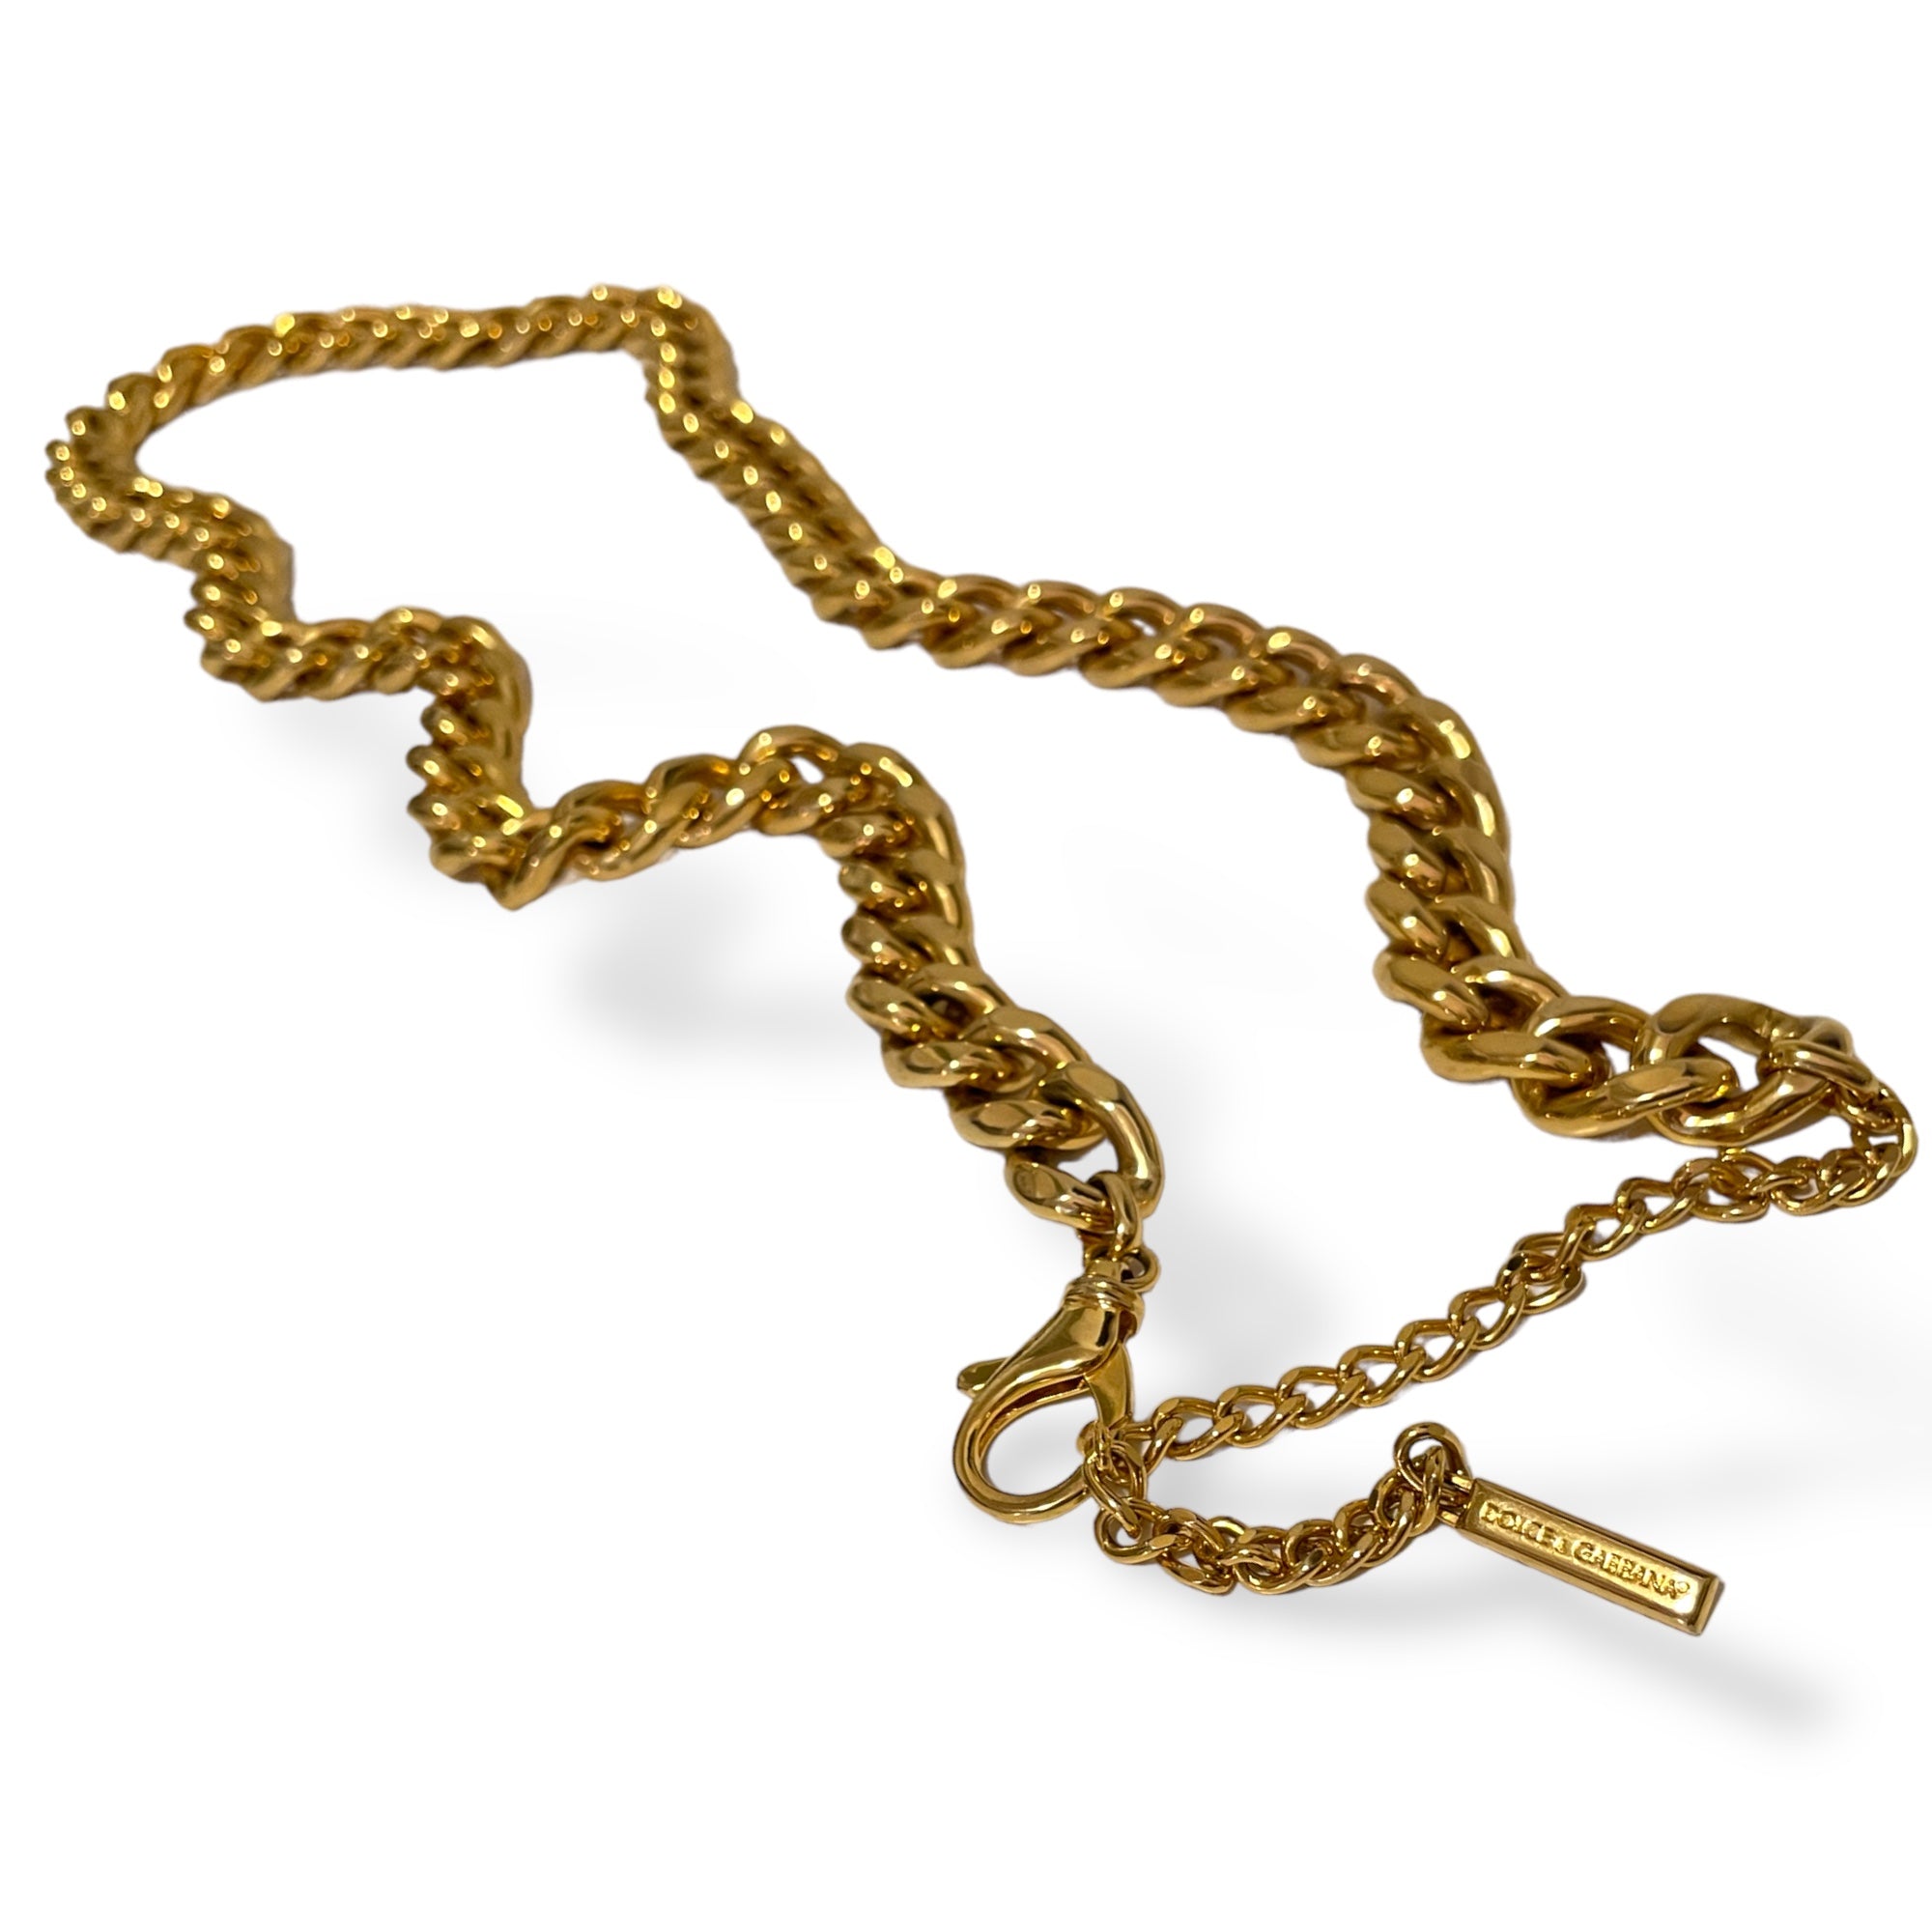 DOLCE & GABBANA Gold-Tone Miami Cuban Chain Belt |Size: 39”|